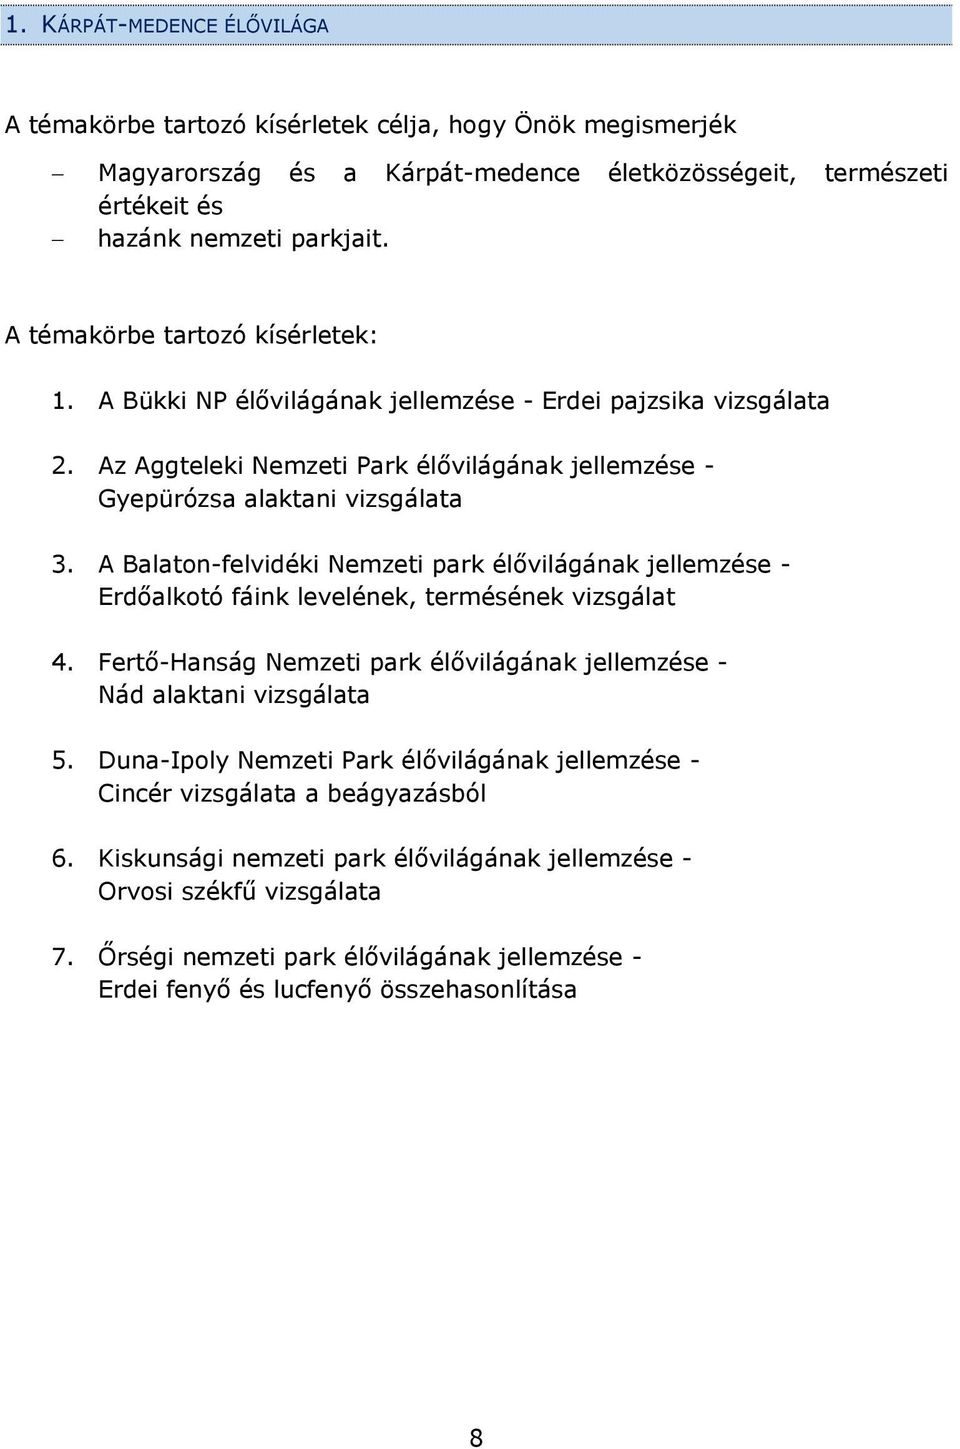 A Balaton-felvidéki Nemzeti park élővilágának jellemzése - Erdőalkotó fáink levelének, termésének vizsgálat 4. Fertő-Hanság Nemzeti park élővilágának jellemzése - Nád alaktani vizsgálata 5.